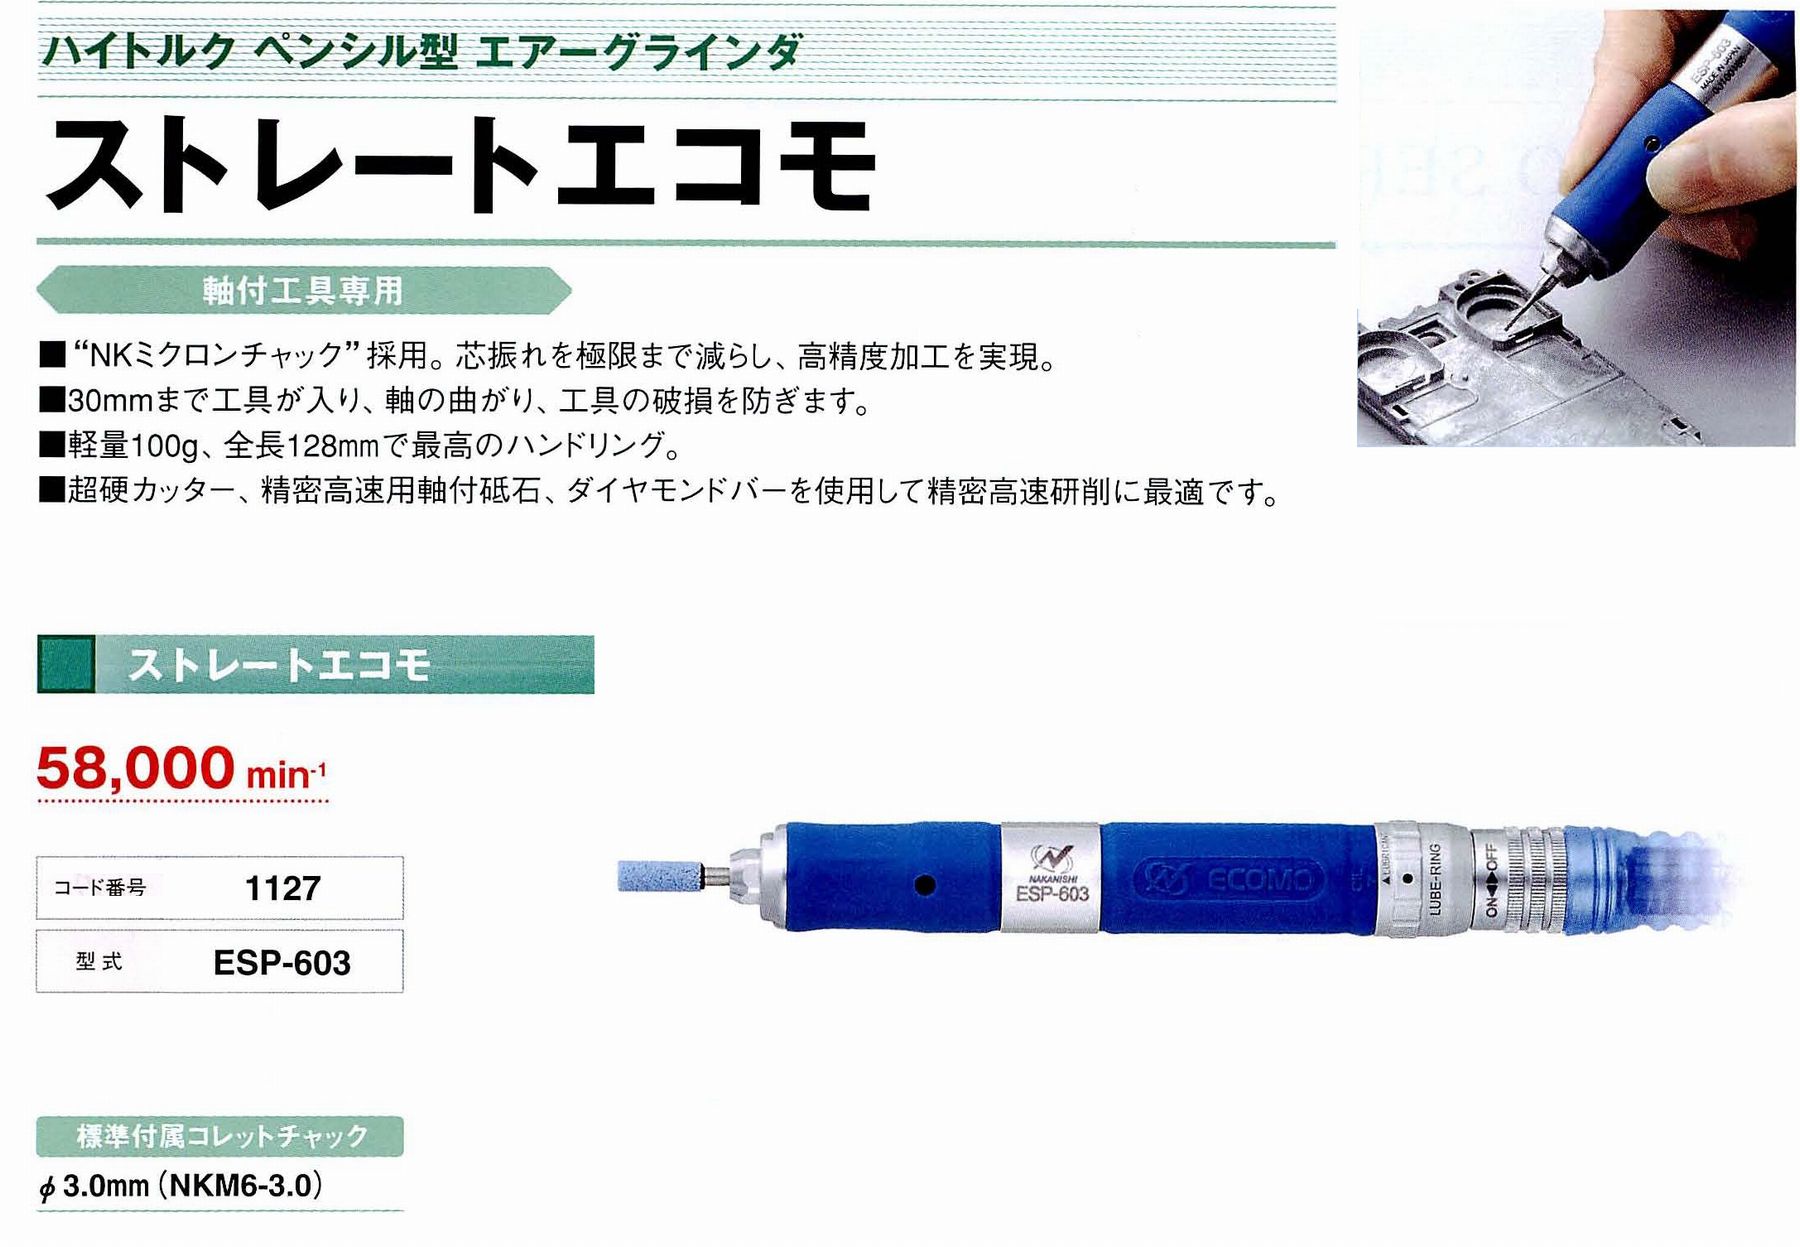 ナカニシ/NAKANISHI ハイトルクペンシル型エアーグラインダストレートエコモ コード番号 1127 型式 ESP-603